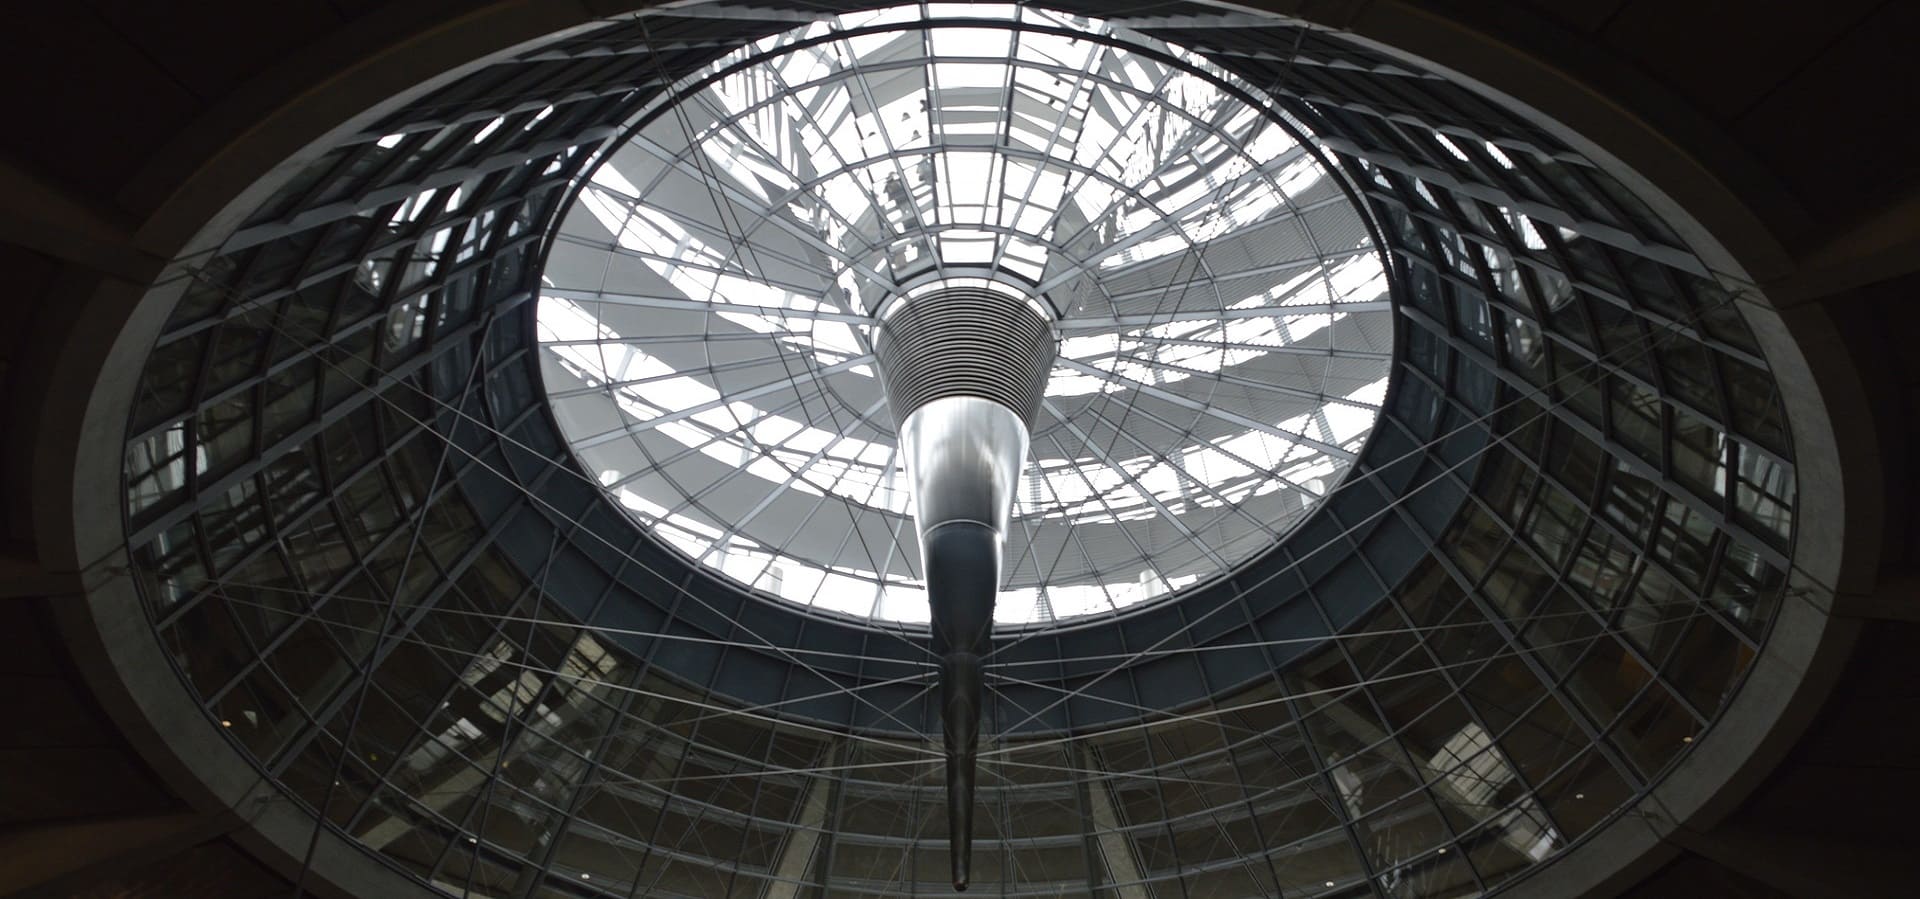 Kuppel vom Bundestag Reichstagsgebäude in Berlin Lüftungstechnik Kiel